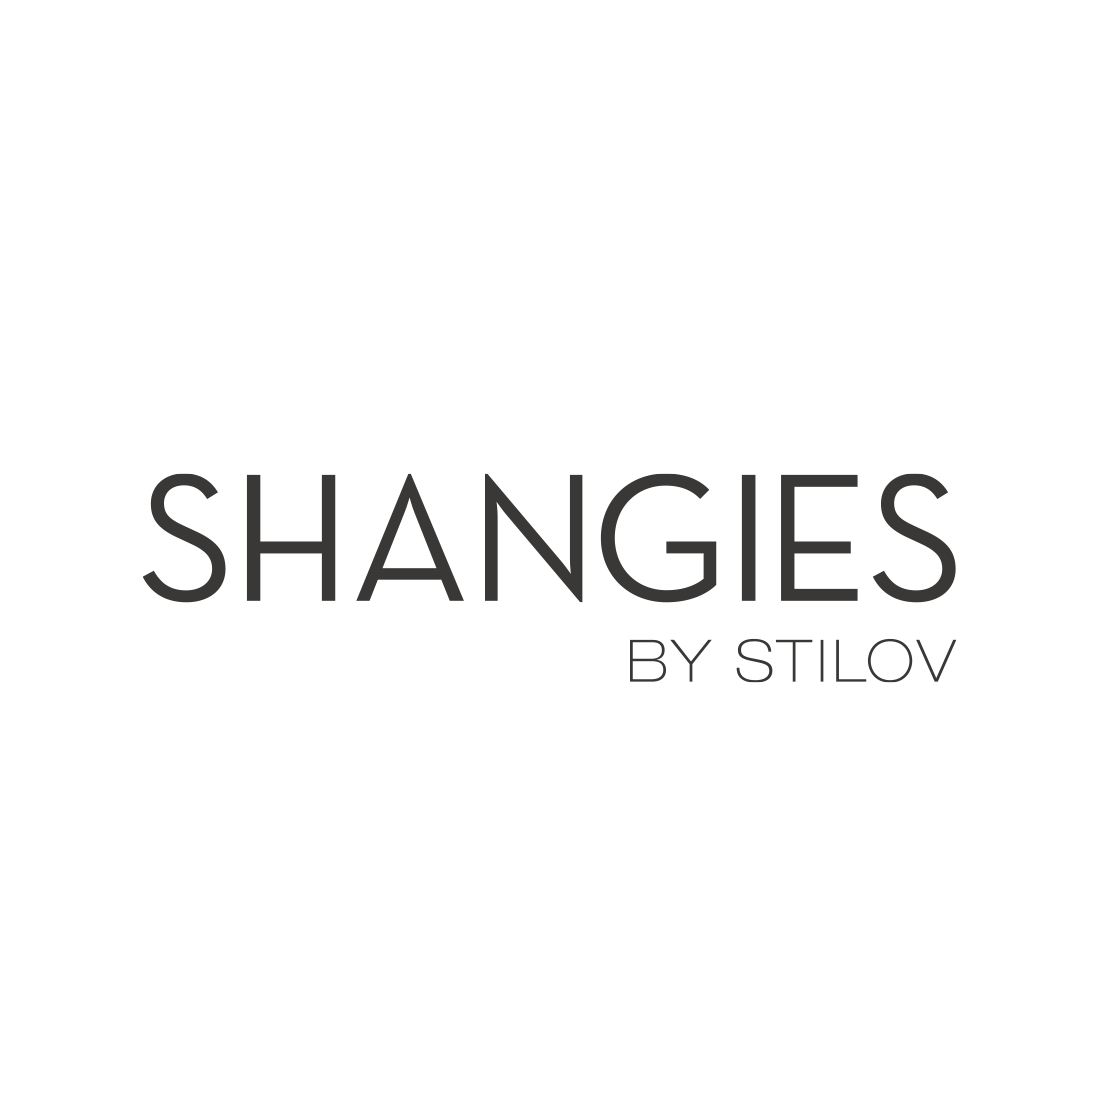 Shangies